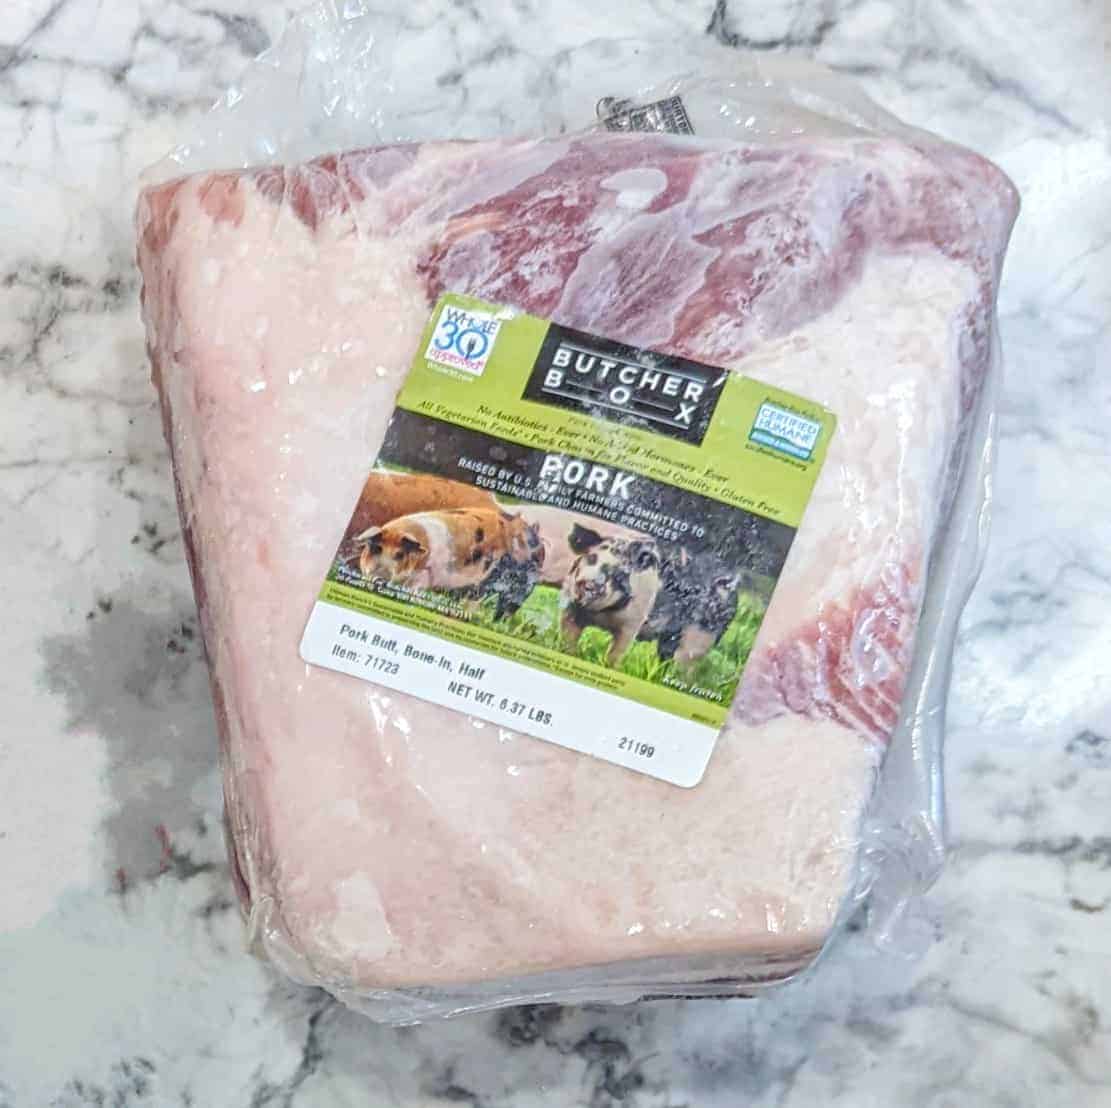 Frozen pork butt from Butcher Box.